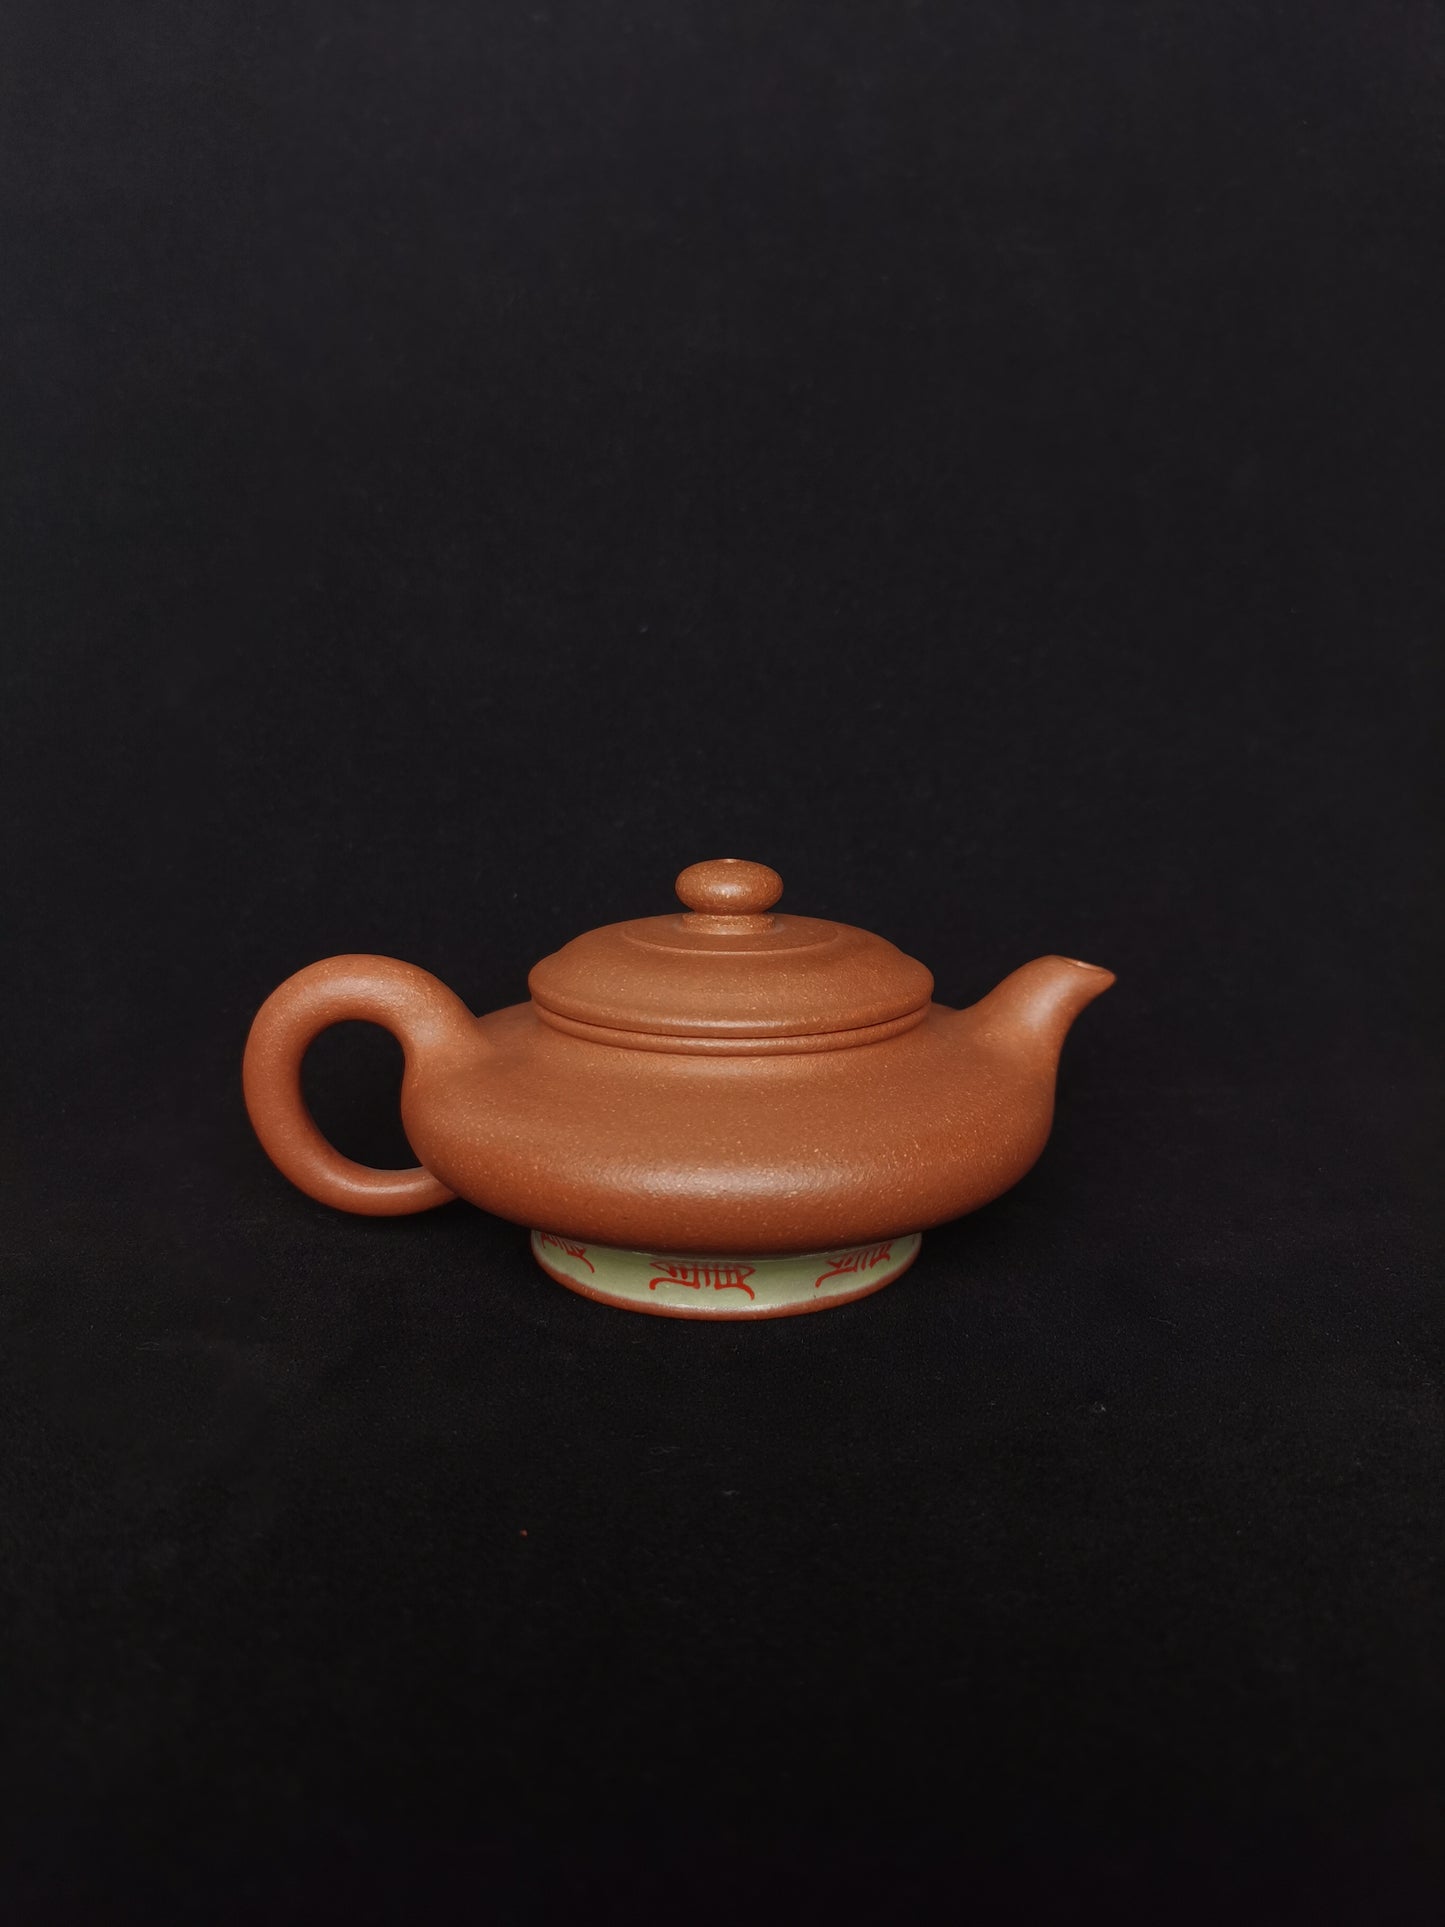 Siyutao teapot the xu bian full handcrafted 125ml yixing teapot